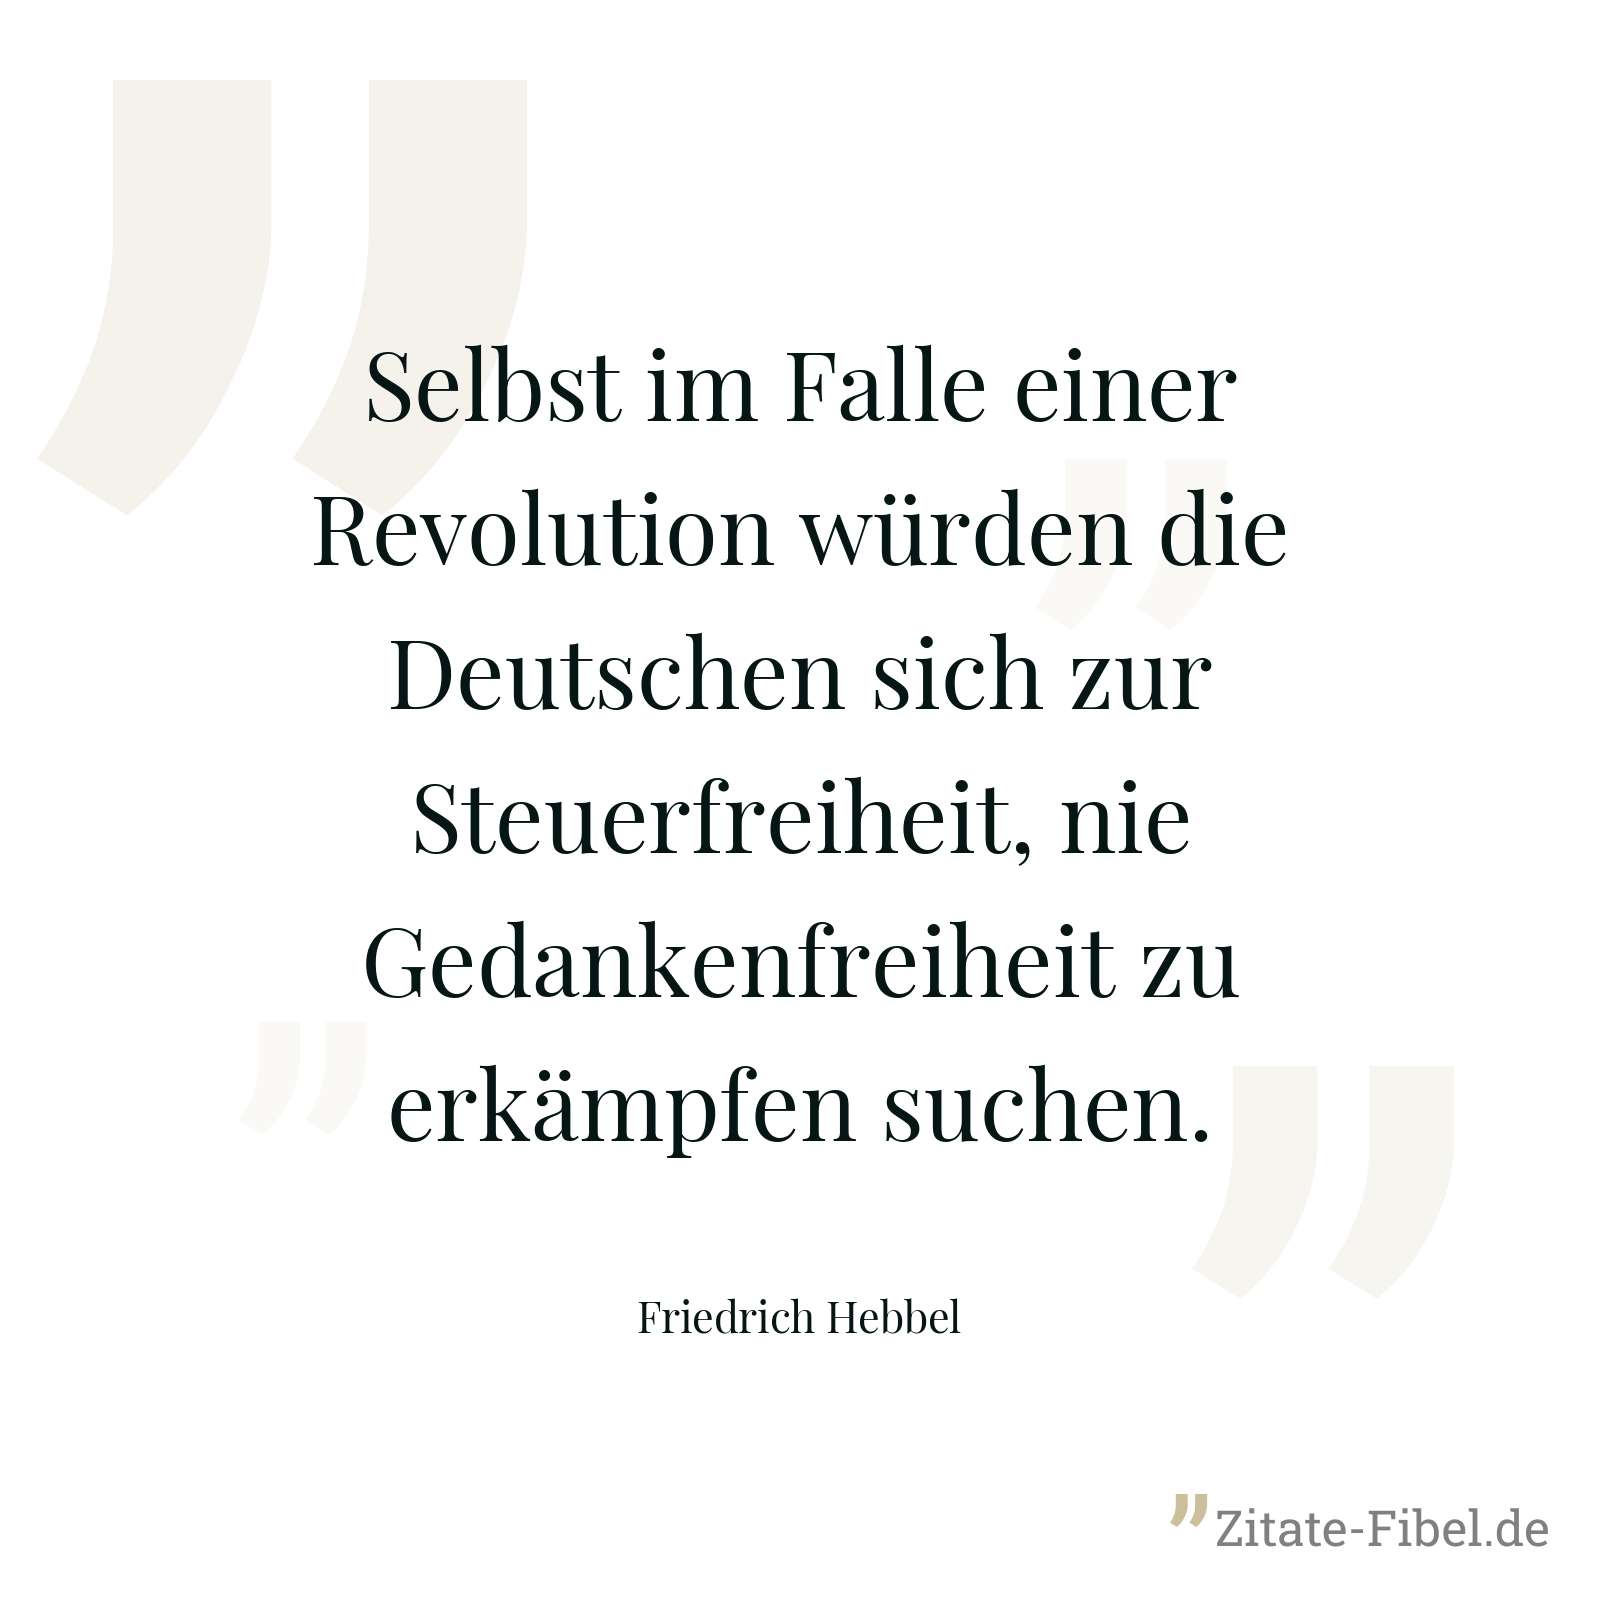 Selbst im Falle einer Revolution würden die Deutschen sich zur Steuerfreiheit, nie Gedankenfreiheit zu erkämpfen suchen. - Friedrich Hebbel